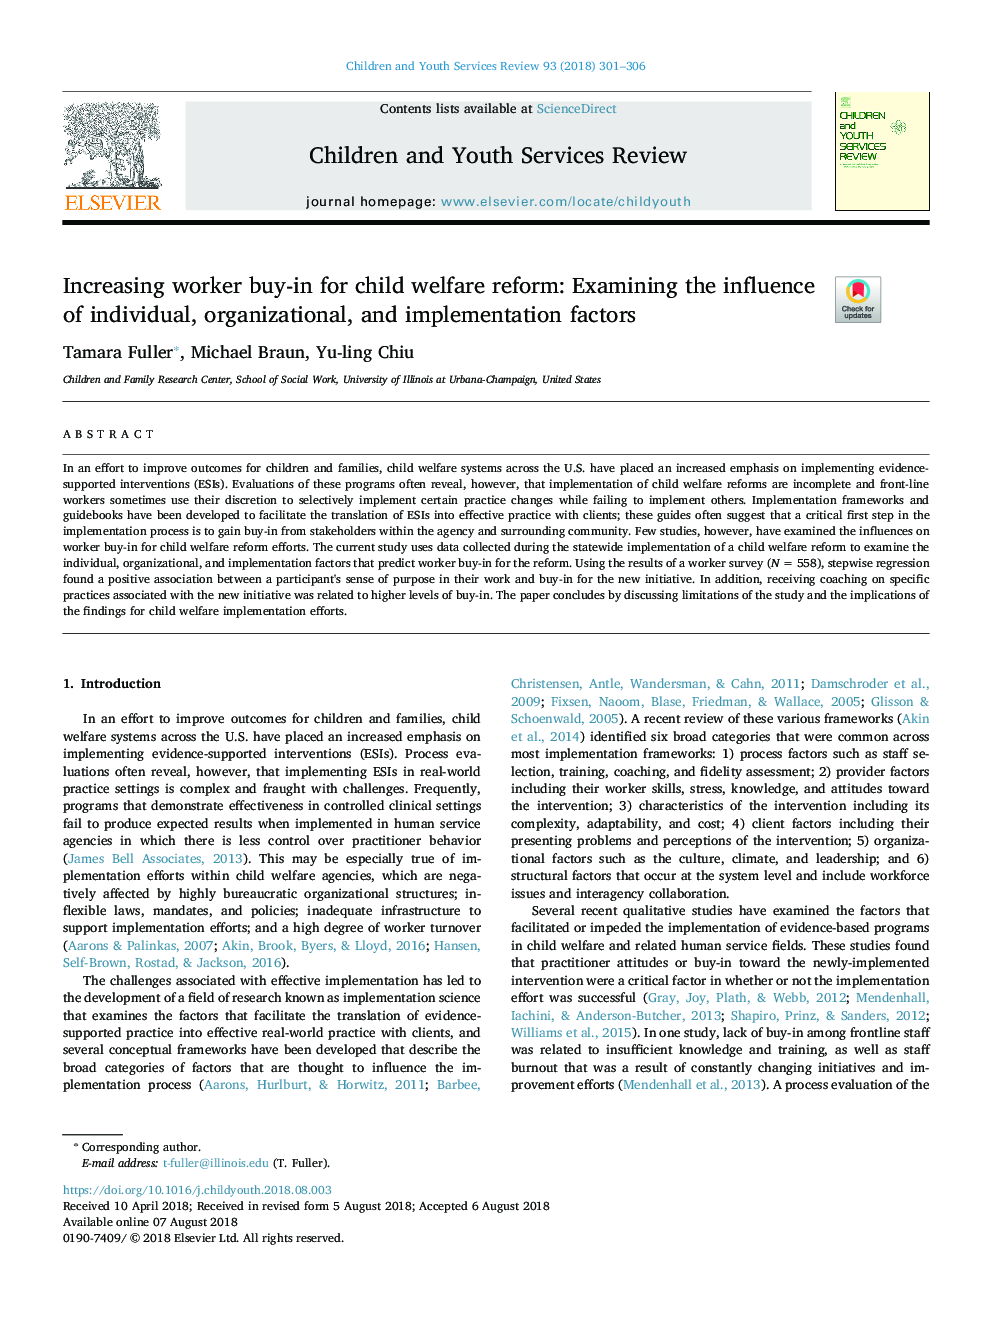 افزایش مشارکت کارکنان برای اصلاح رفاه کودکان: بررسی تاثیر عوامل فردی، سازمانی و اجرایی